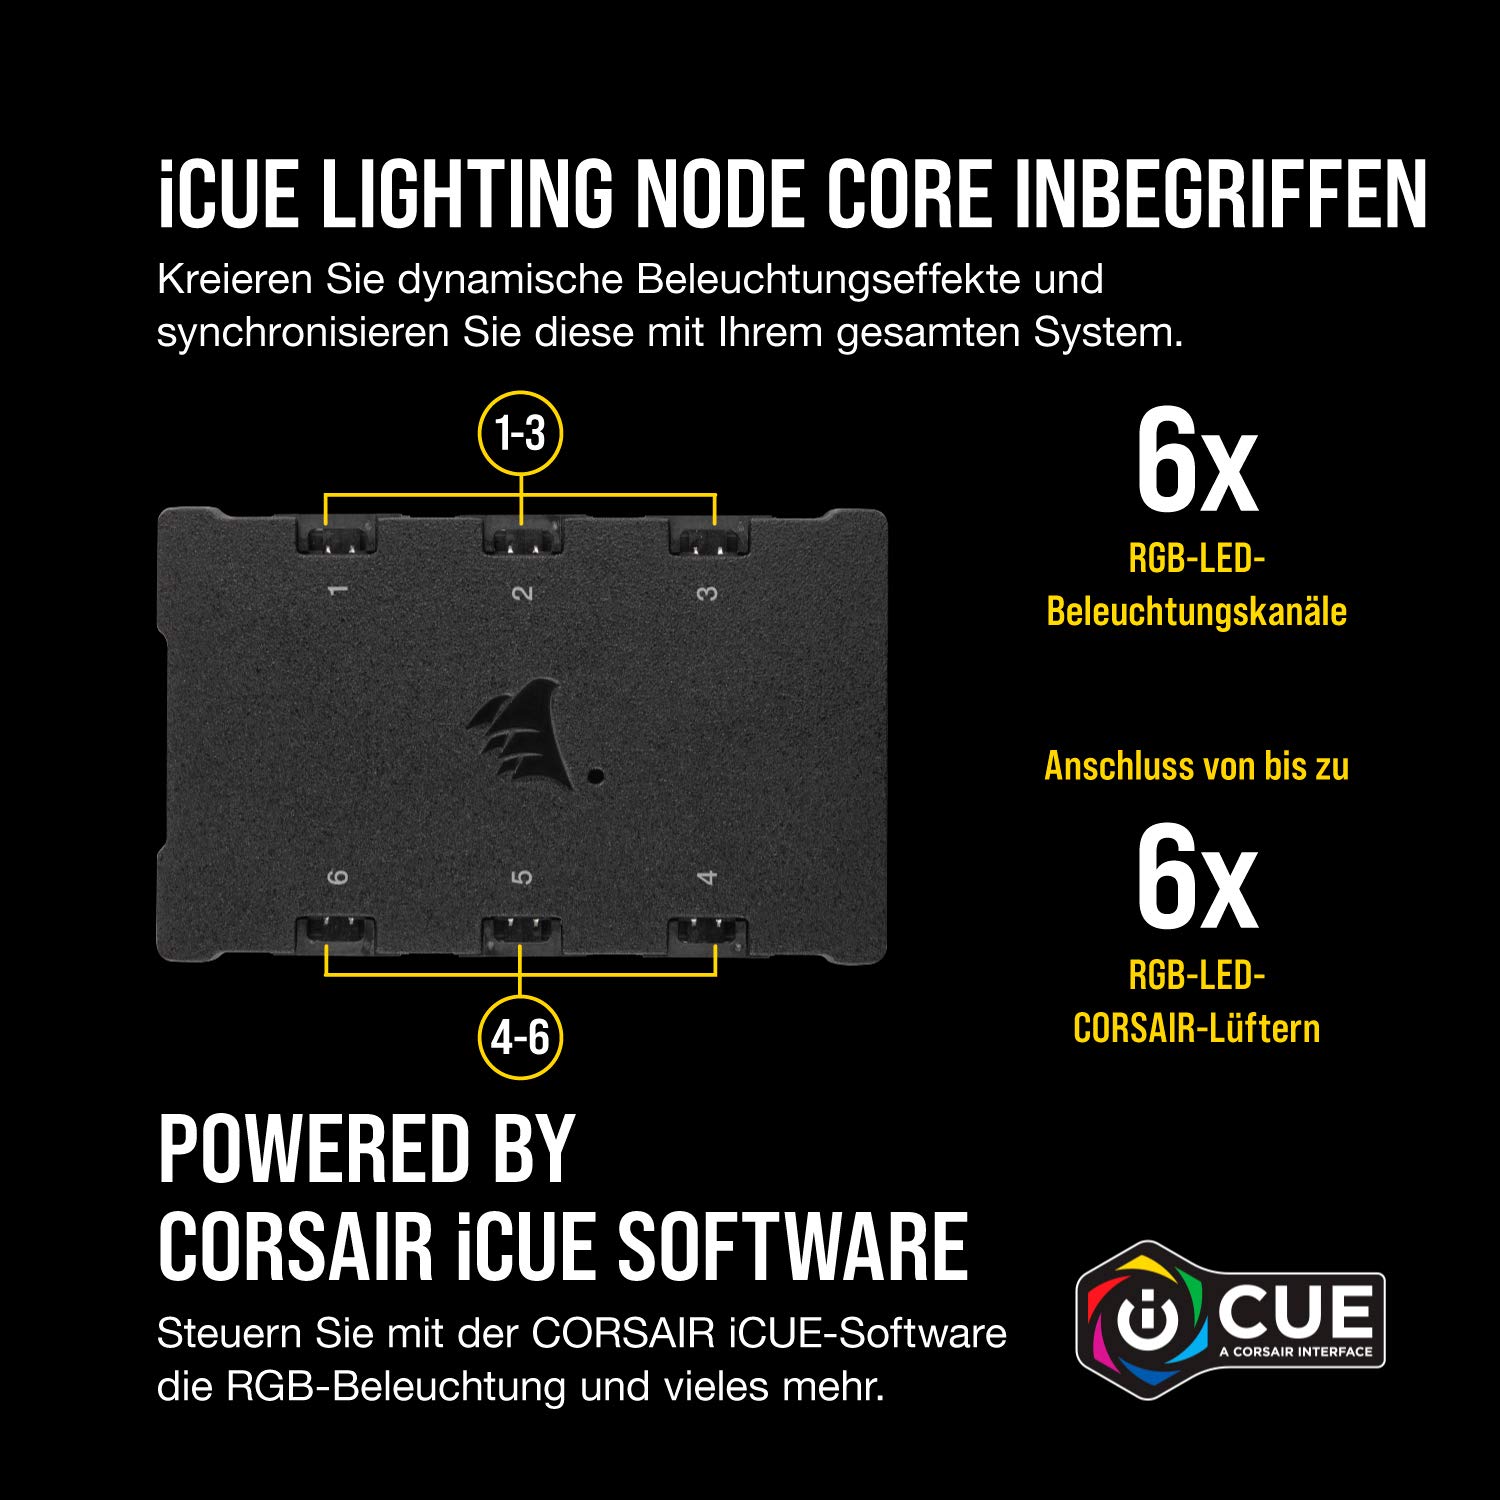 Corsair iCUE QL140 RGB, 140-mm-RGB-LED-PWM-Lüfter (68 Einzeln Ansteuerbare RGB-LEDs, Schwindigkeiten Bis zu 1,250 U/Min, Geräuscharm) 2er-Pack mit Lighting Node Core - schwarz